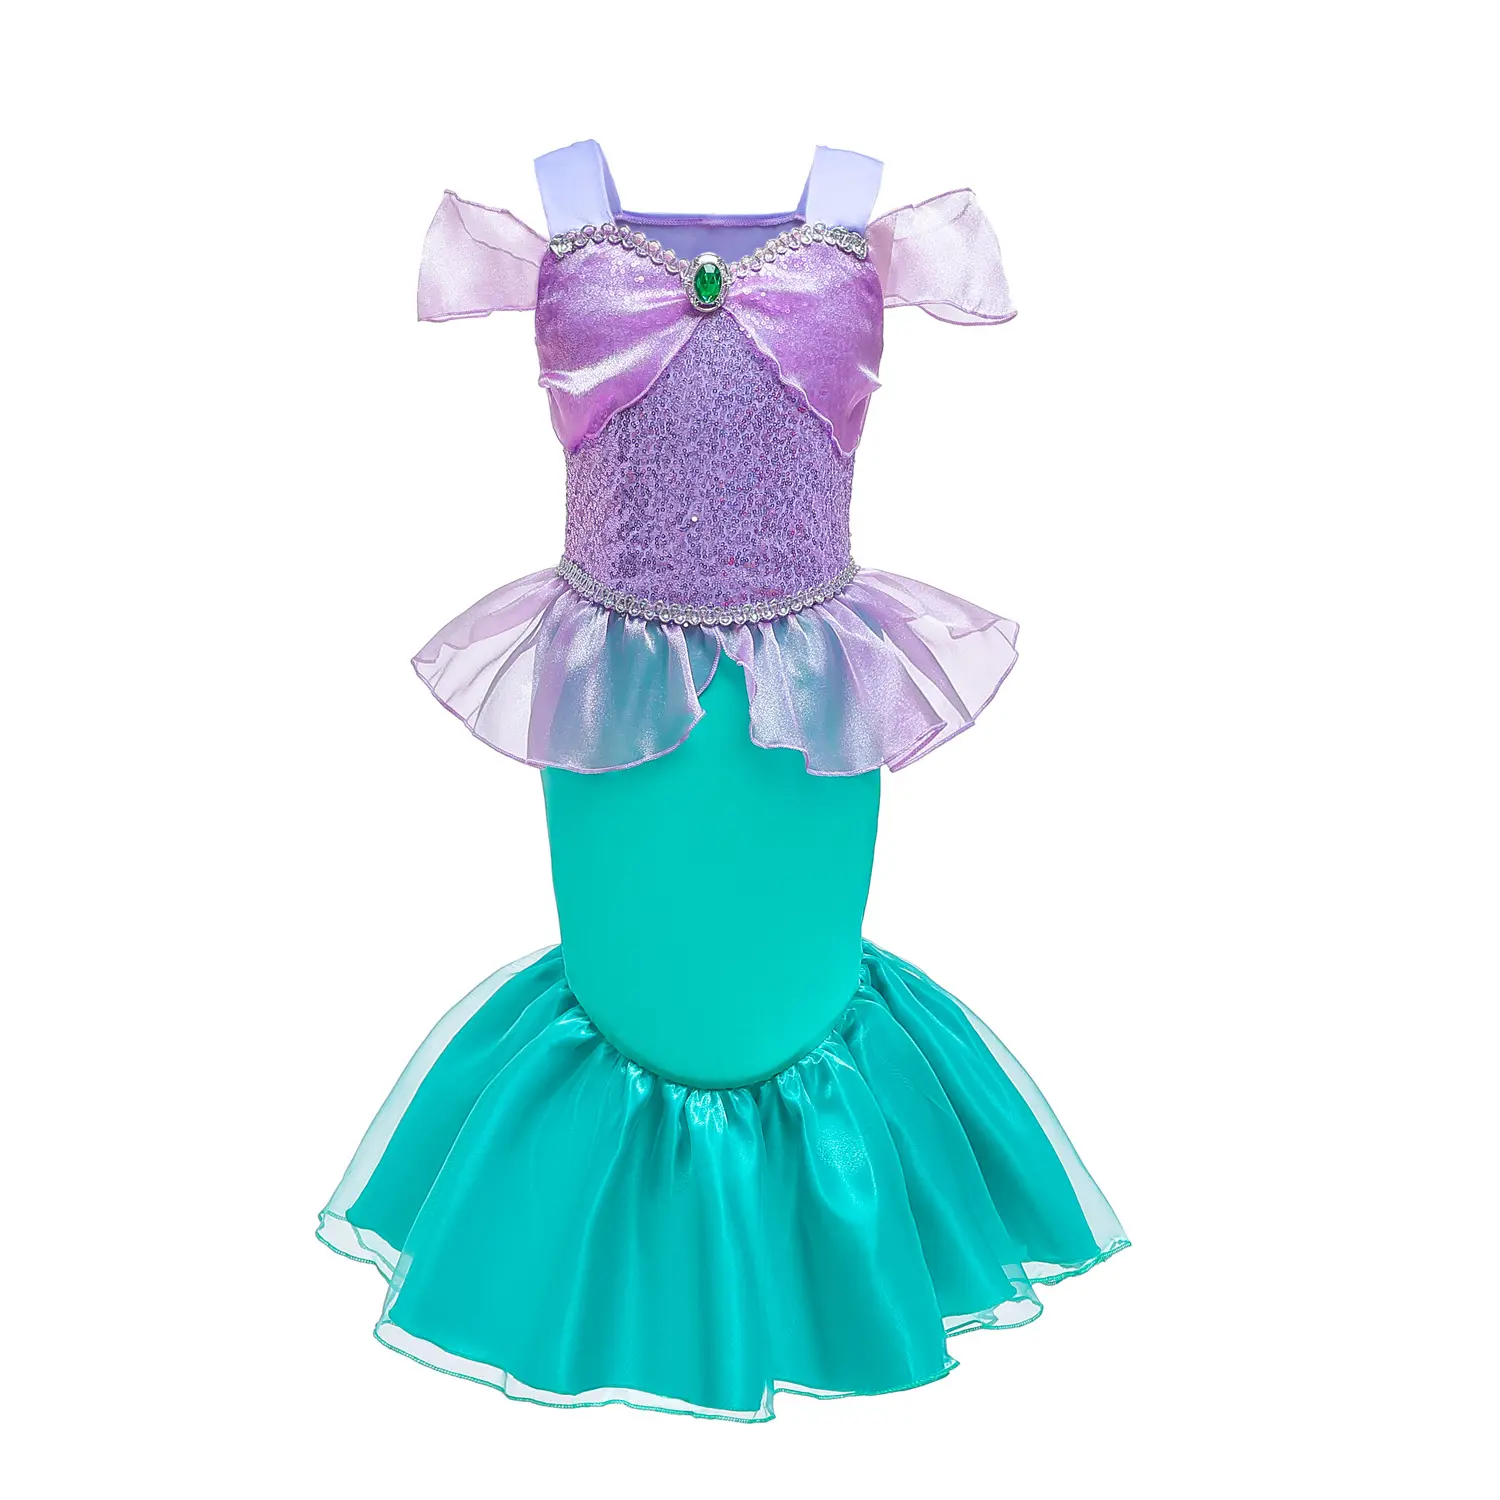 ชุดคอสเพลย์นางเงือกสำหรับเด็กไปงานปาร์ตี้ชุดนางเงือกสีม่วงประดับเลื่อมสำหรับเด็กผู้หญิง